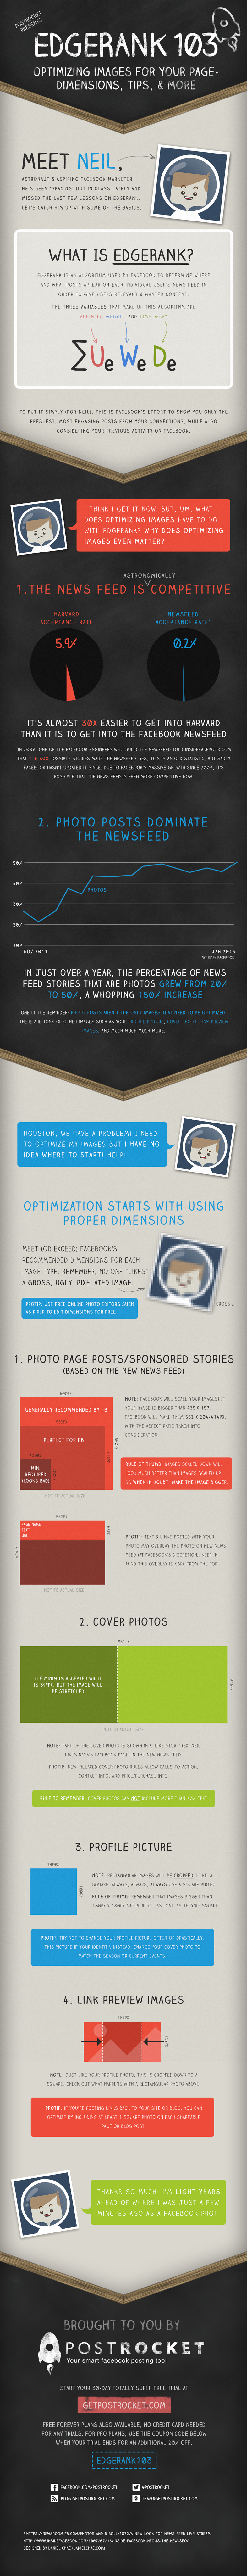 Infographie : l'EdgeRank de Facebook et l'optimisation des images [3ème partie]